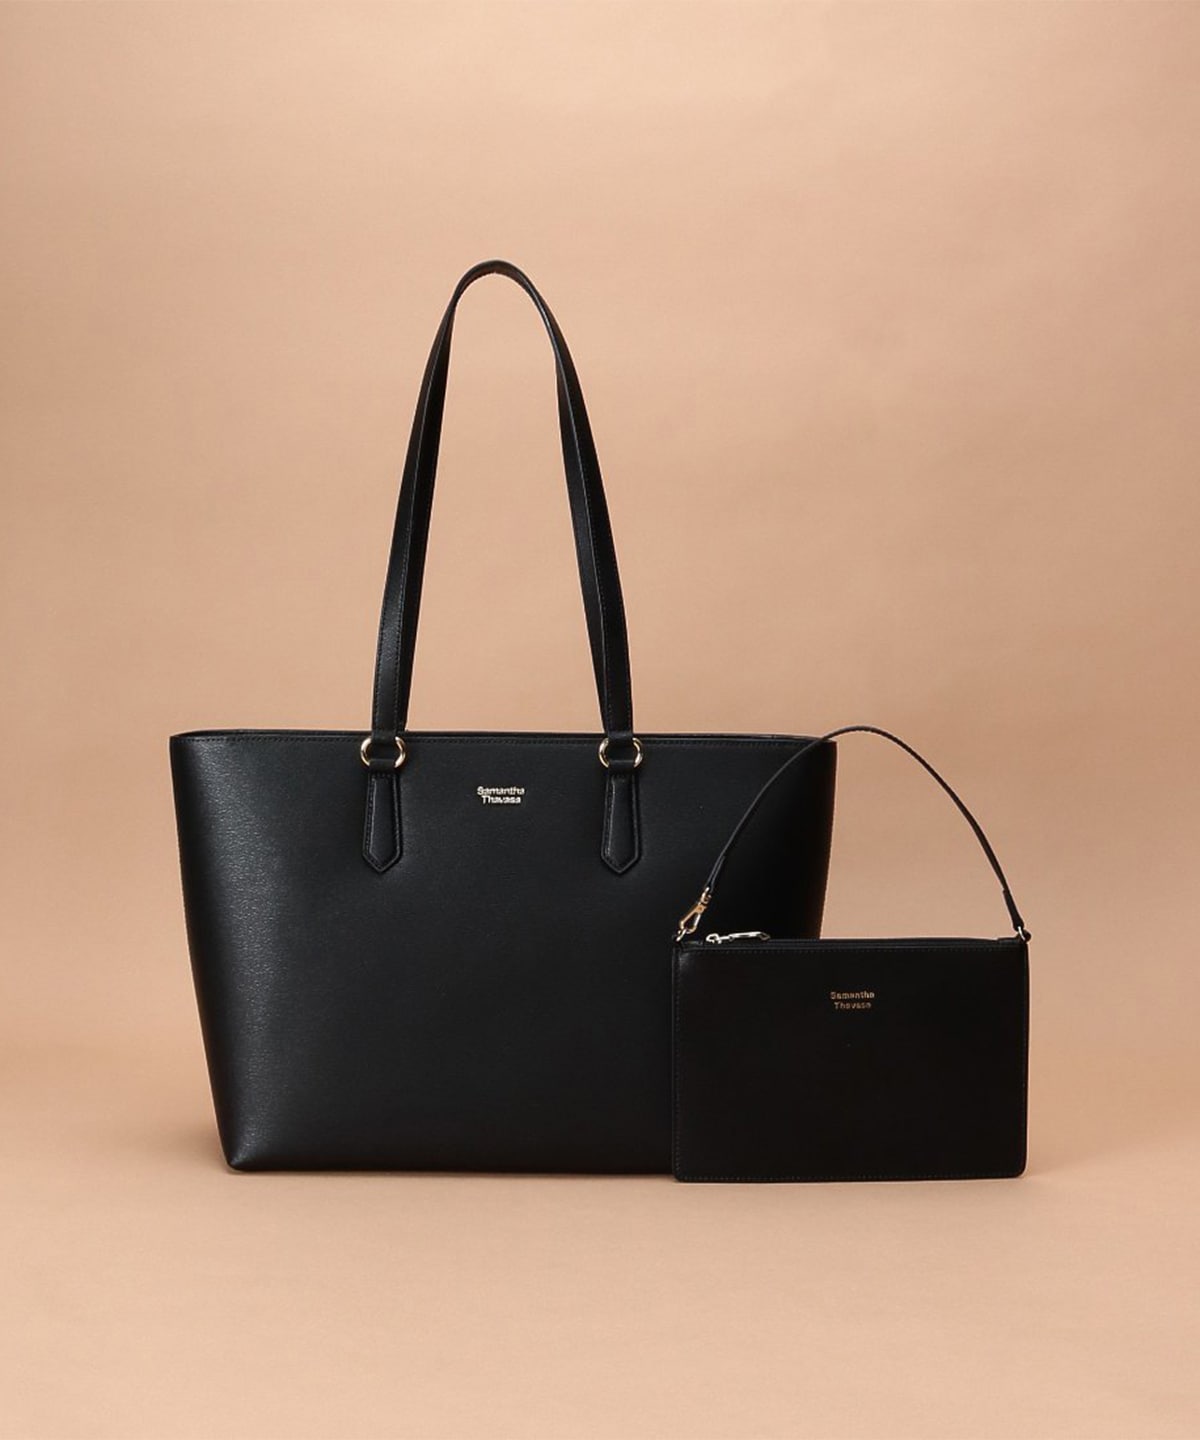 Dream bag for スタッズトート(FREE ブラック): Samantha Thavasa